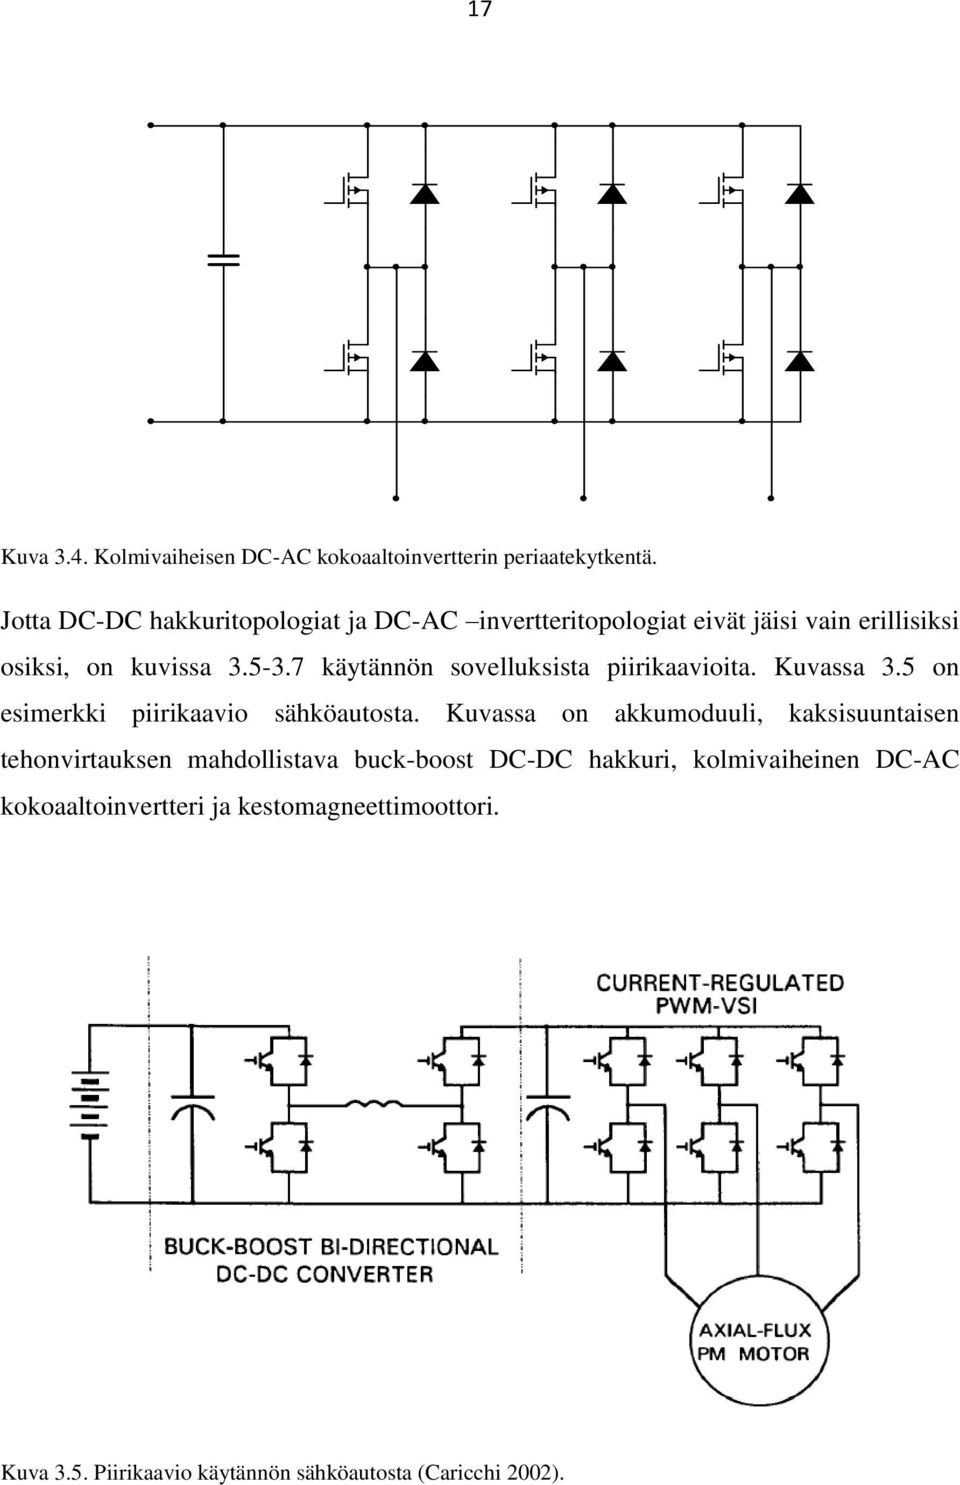 7 käytännön sovelluksista piirikaavioita. Kuvassa 3.5 on esimerkki piirikaavio sähköautosta.